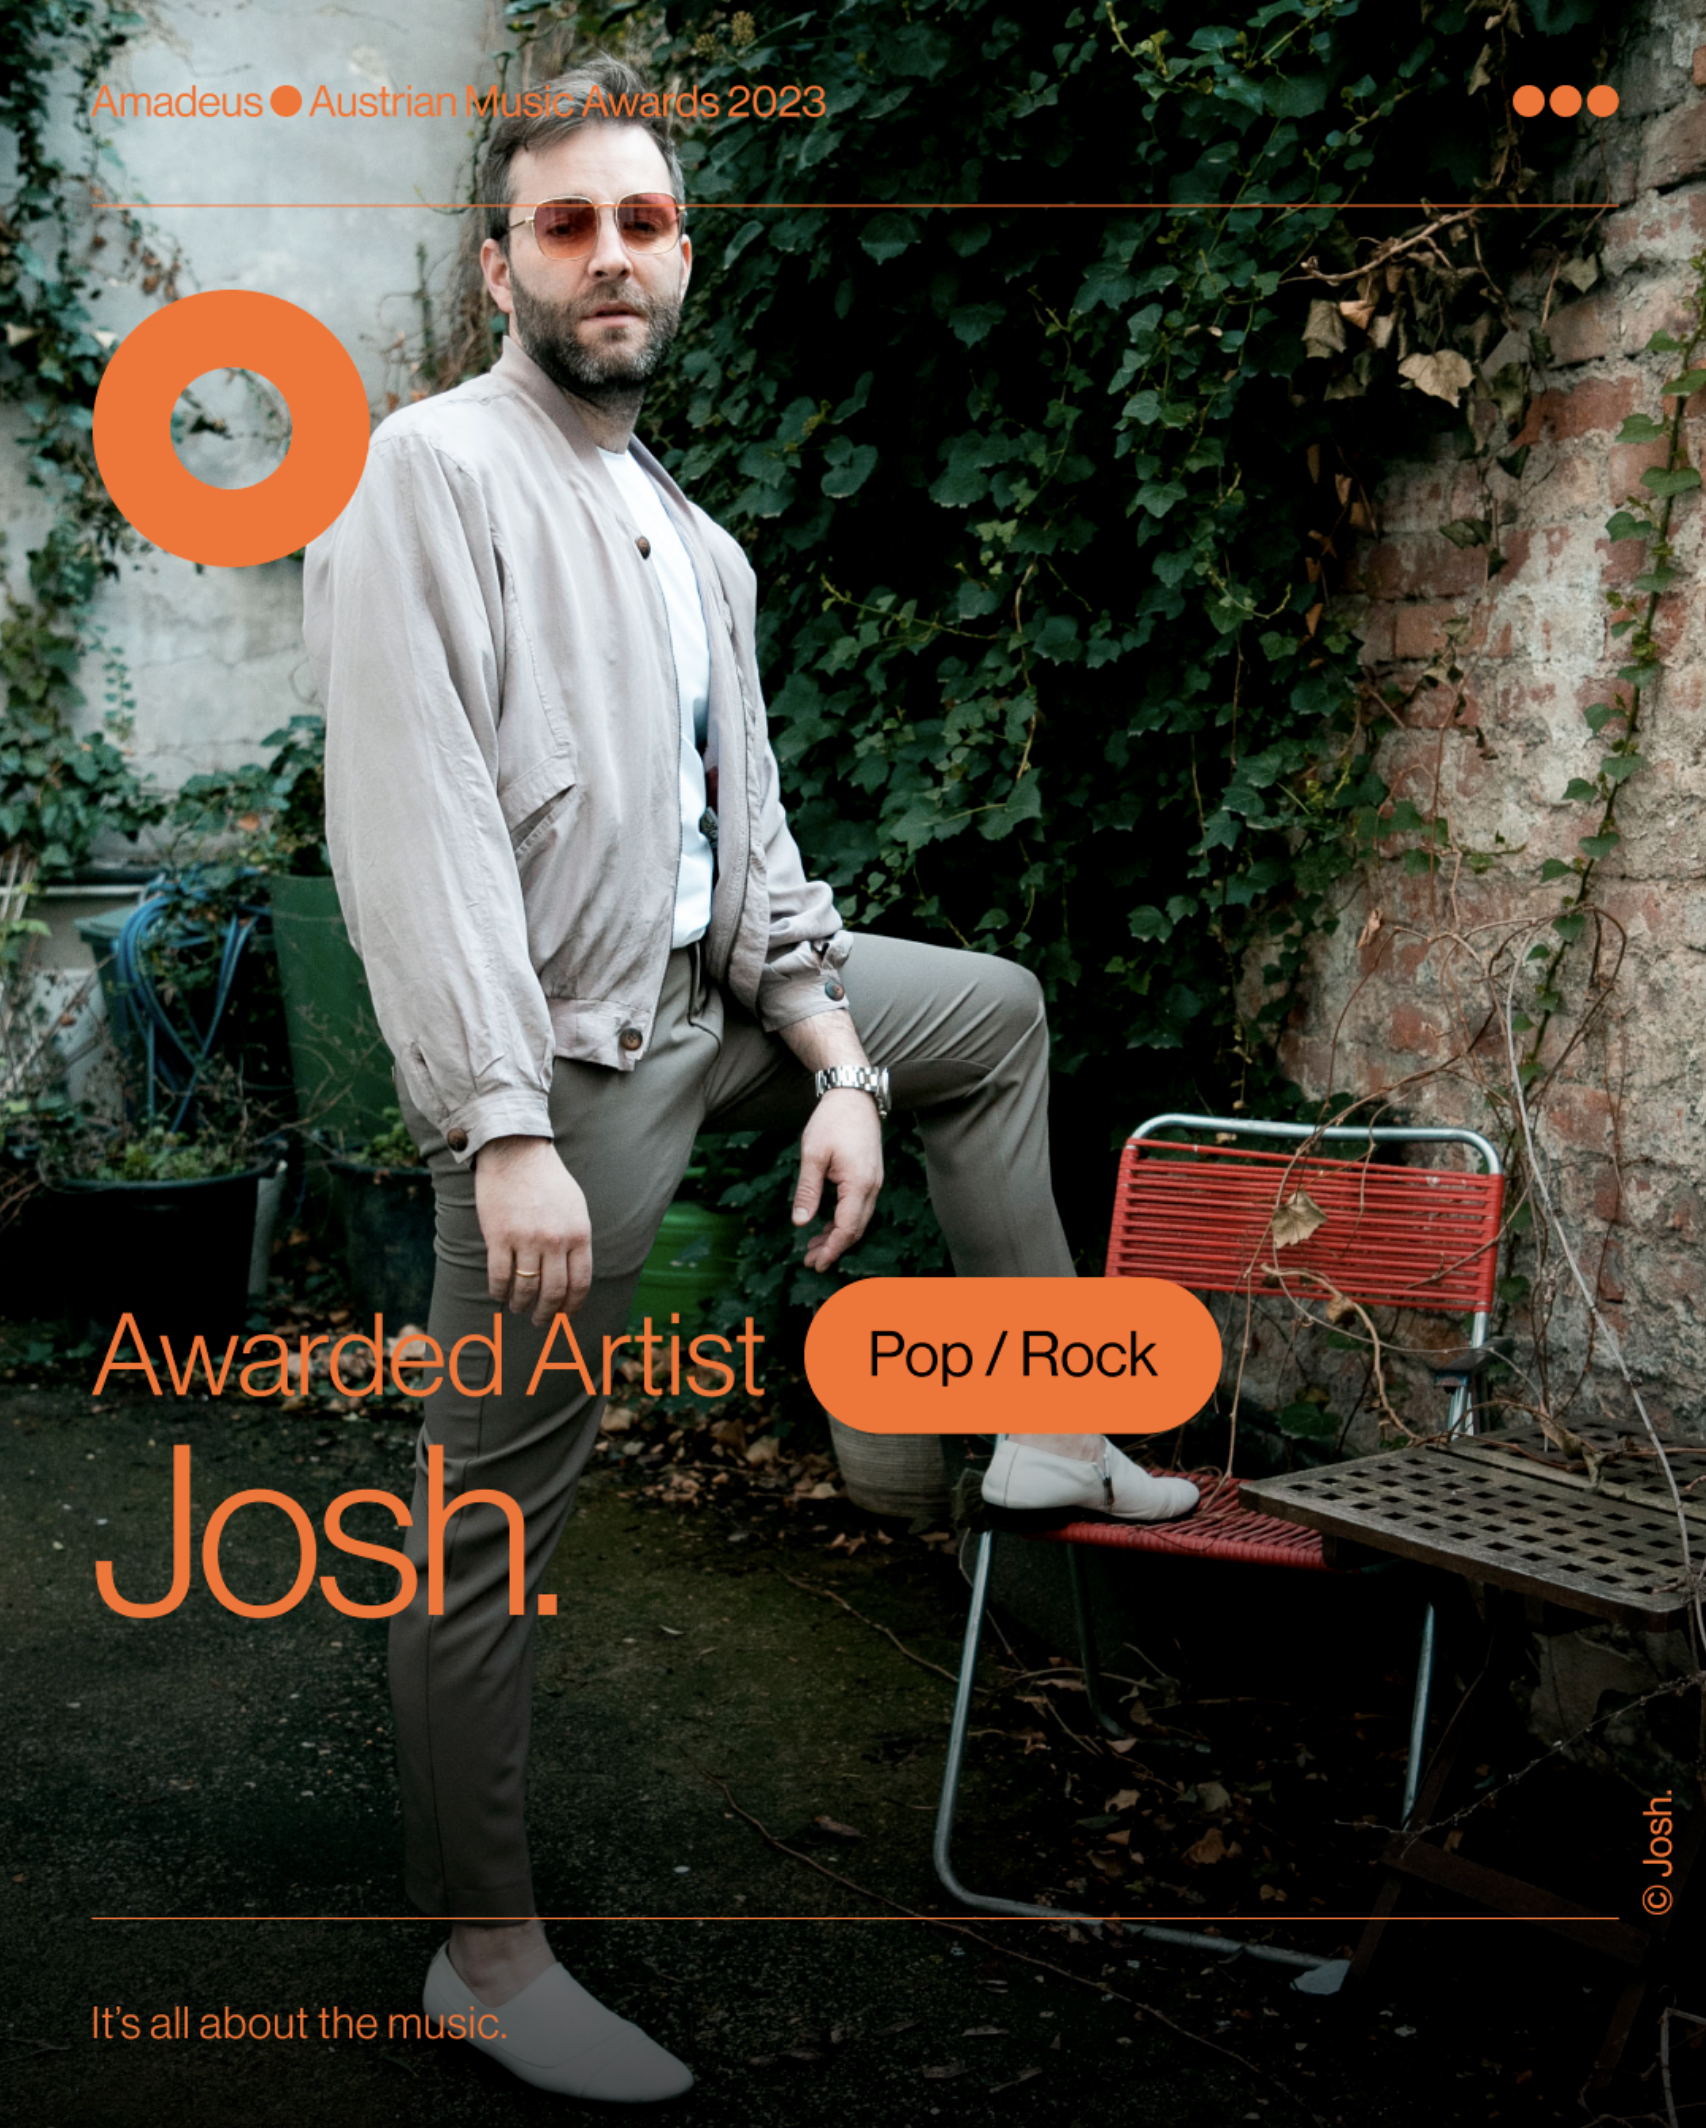 Josh. der Gewinner der Amadeus Awards 2023